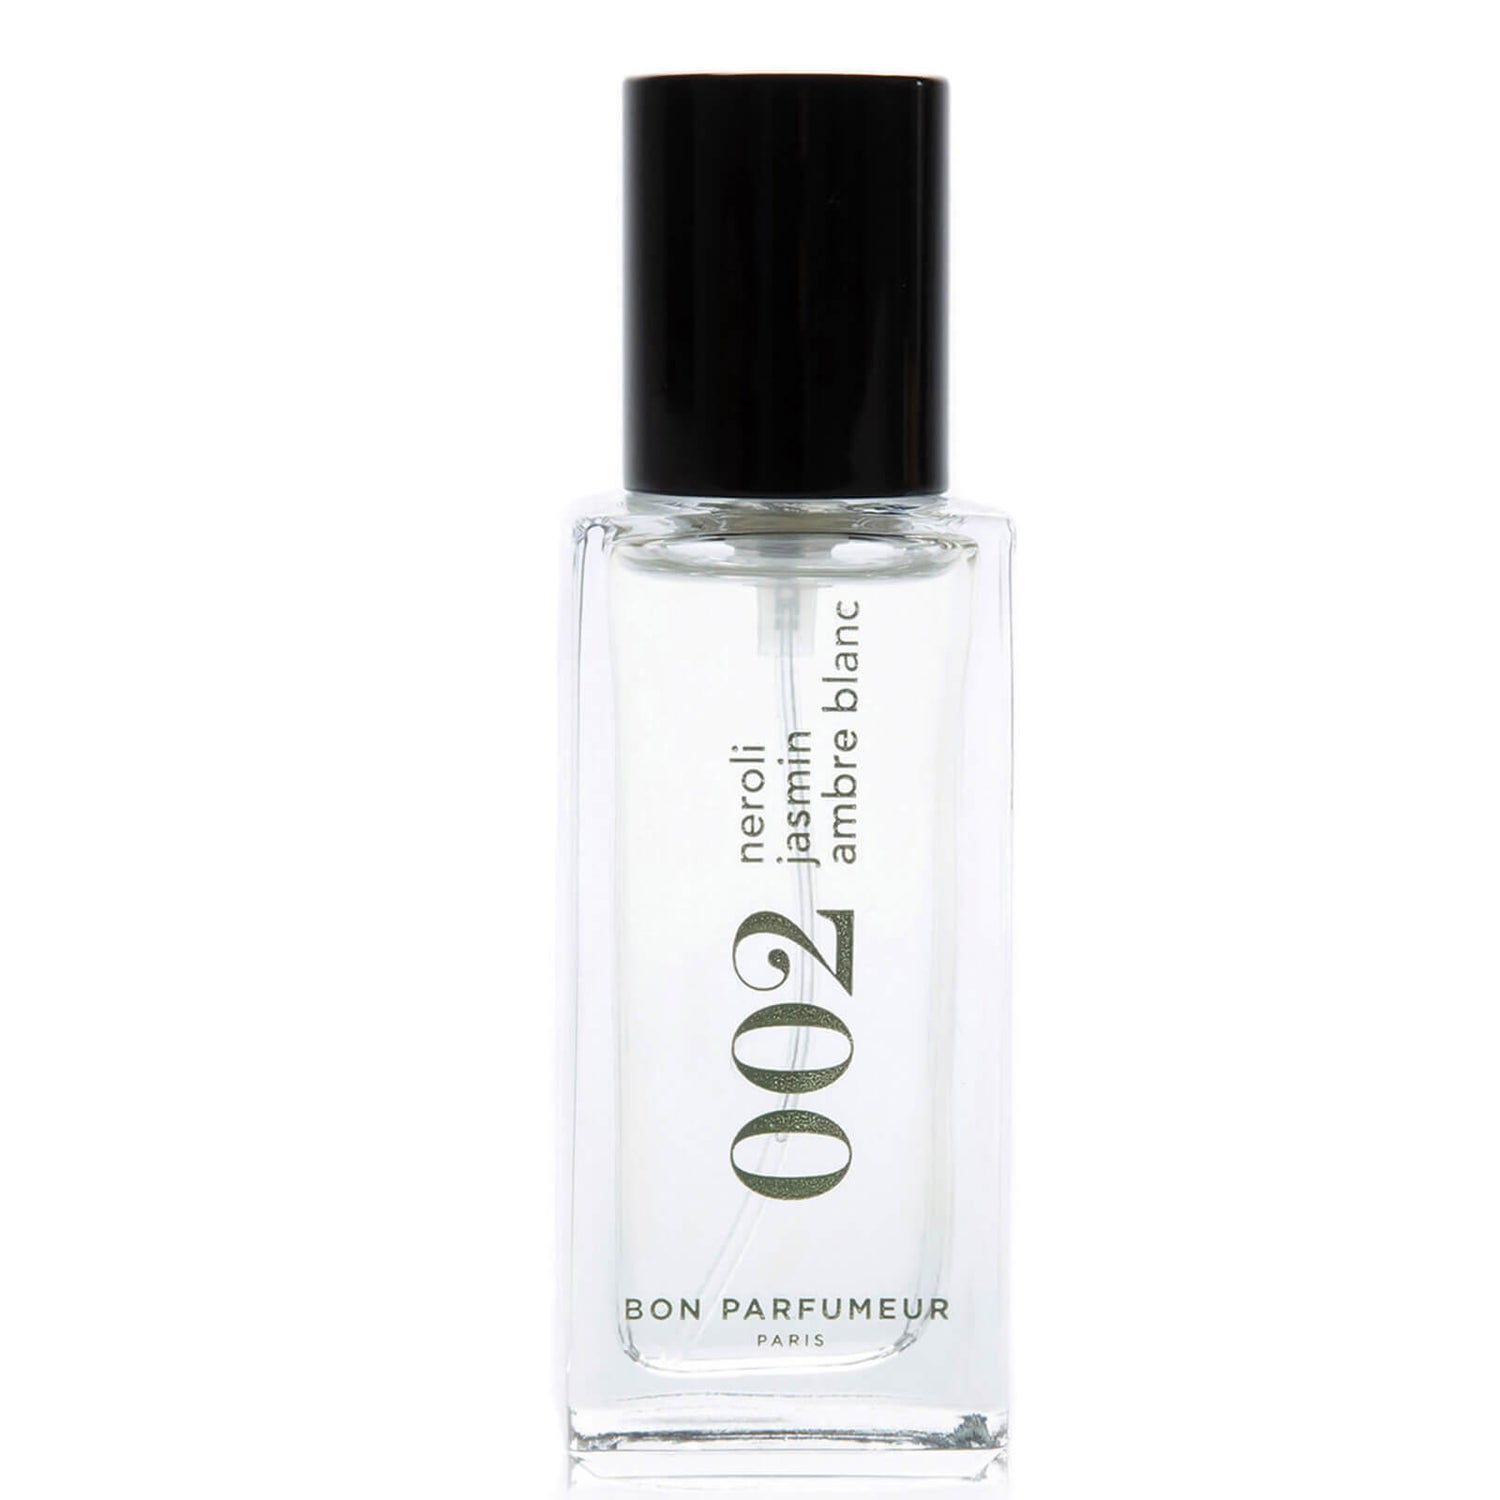 Bon Parfumeur 002 Neroli, Jasmine, White Amber Eau de Parfum - 15ml